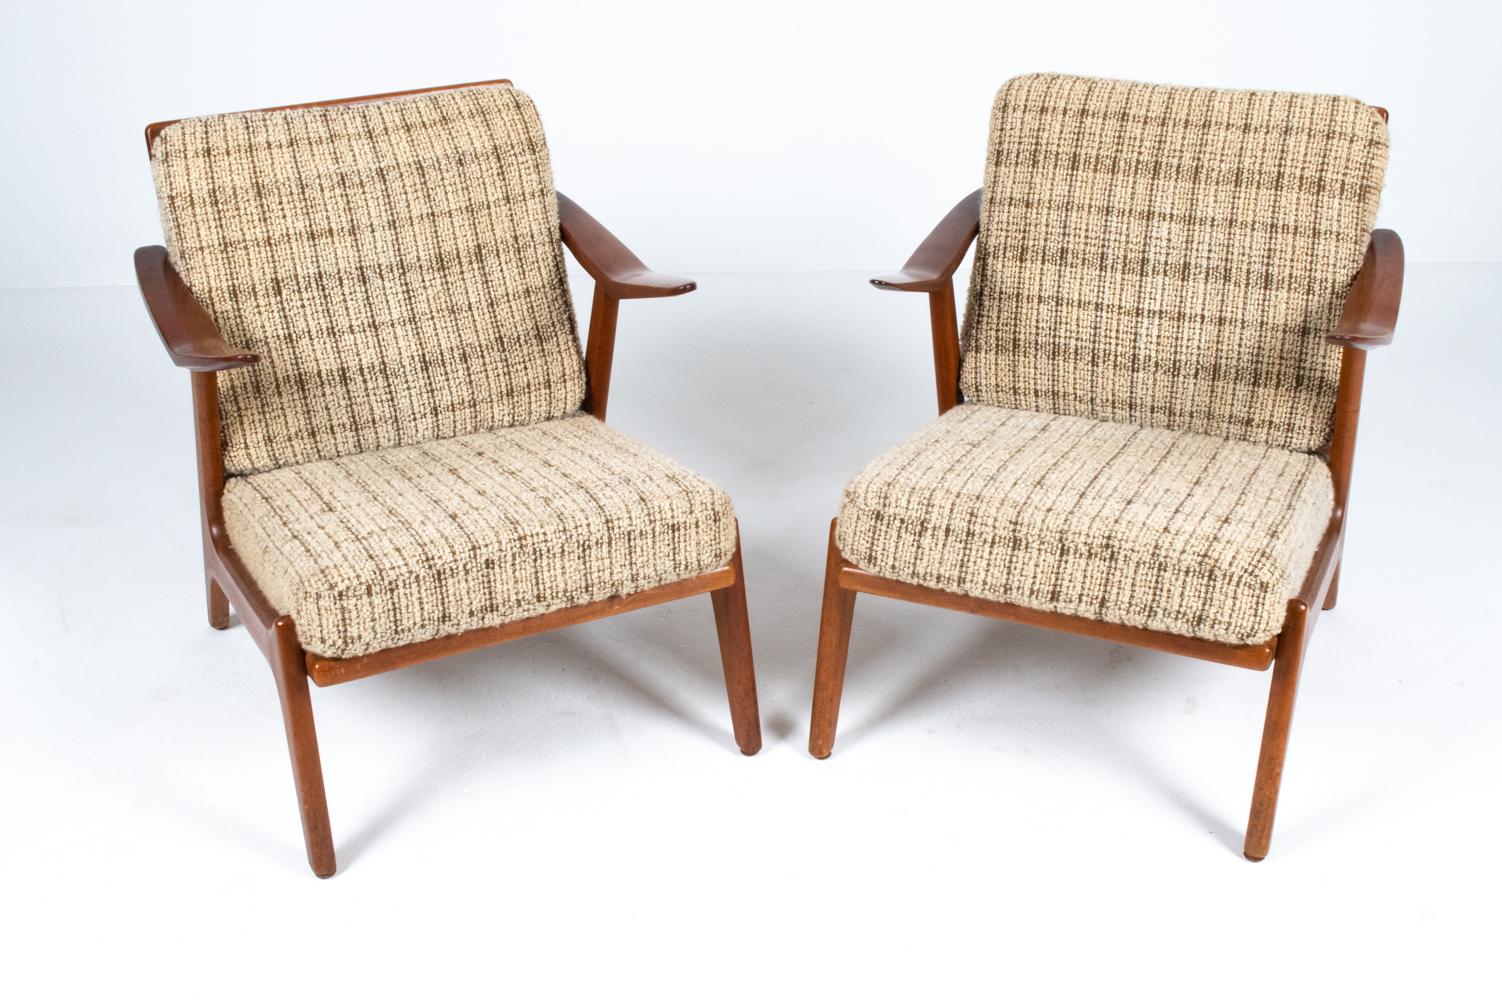 L'un des designs les plus emblématiques du designer danois H. Brockmann-Petersen au milieu du XXe siècle, ces chaises de salon attrayantes présentent des cadres sculpturaux en bois de teck bien ouvragé. Reconnus pour leurs formes angulaires à la